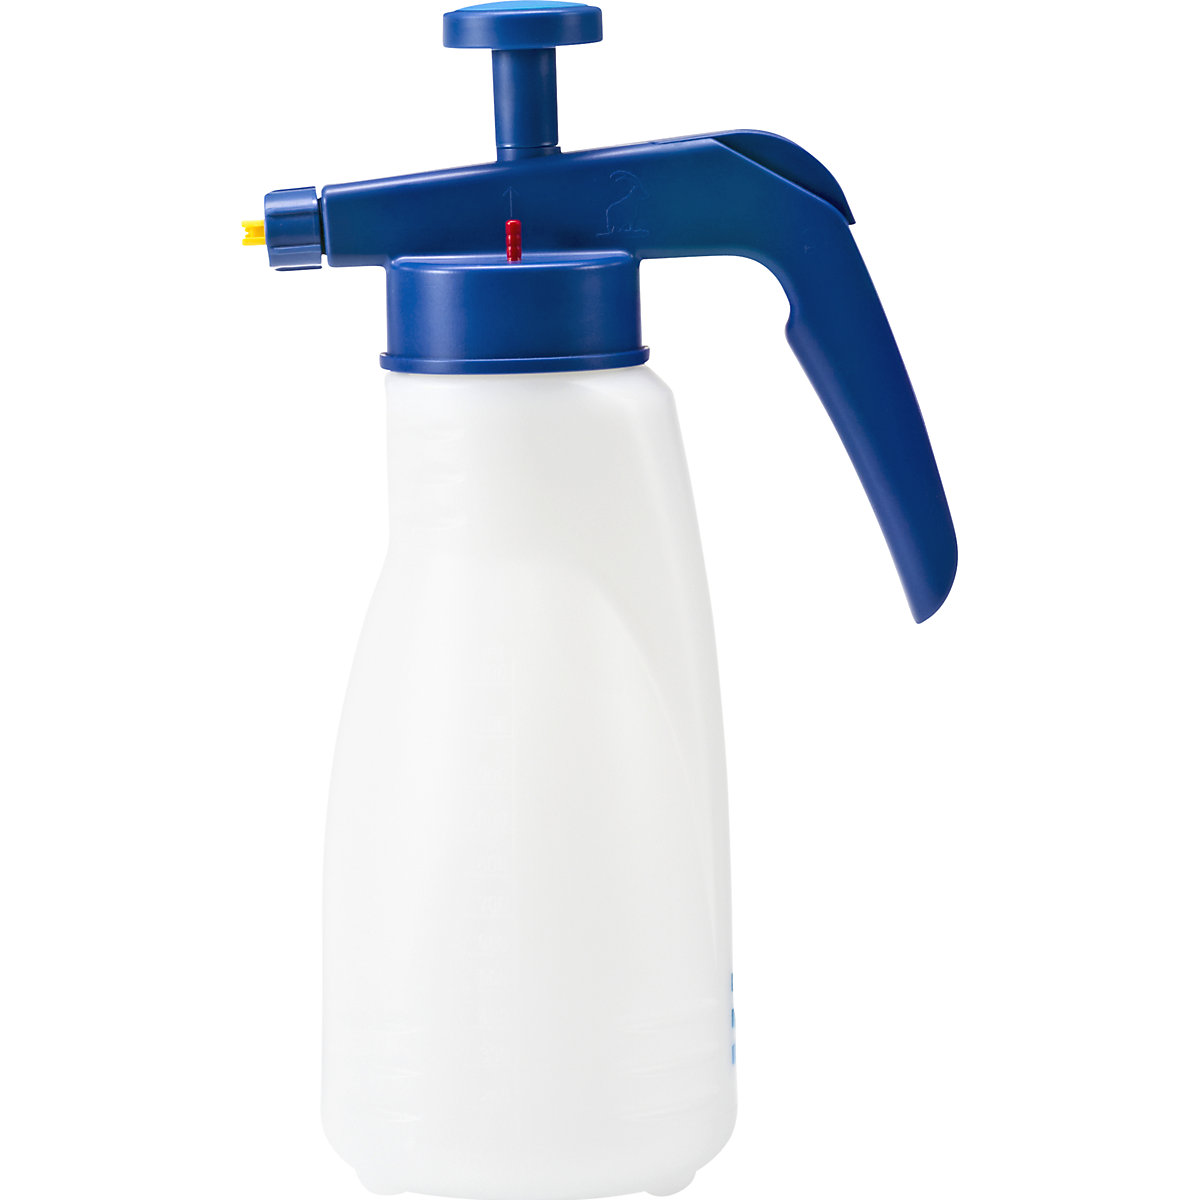 Pump spray container – PRESSOL